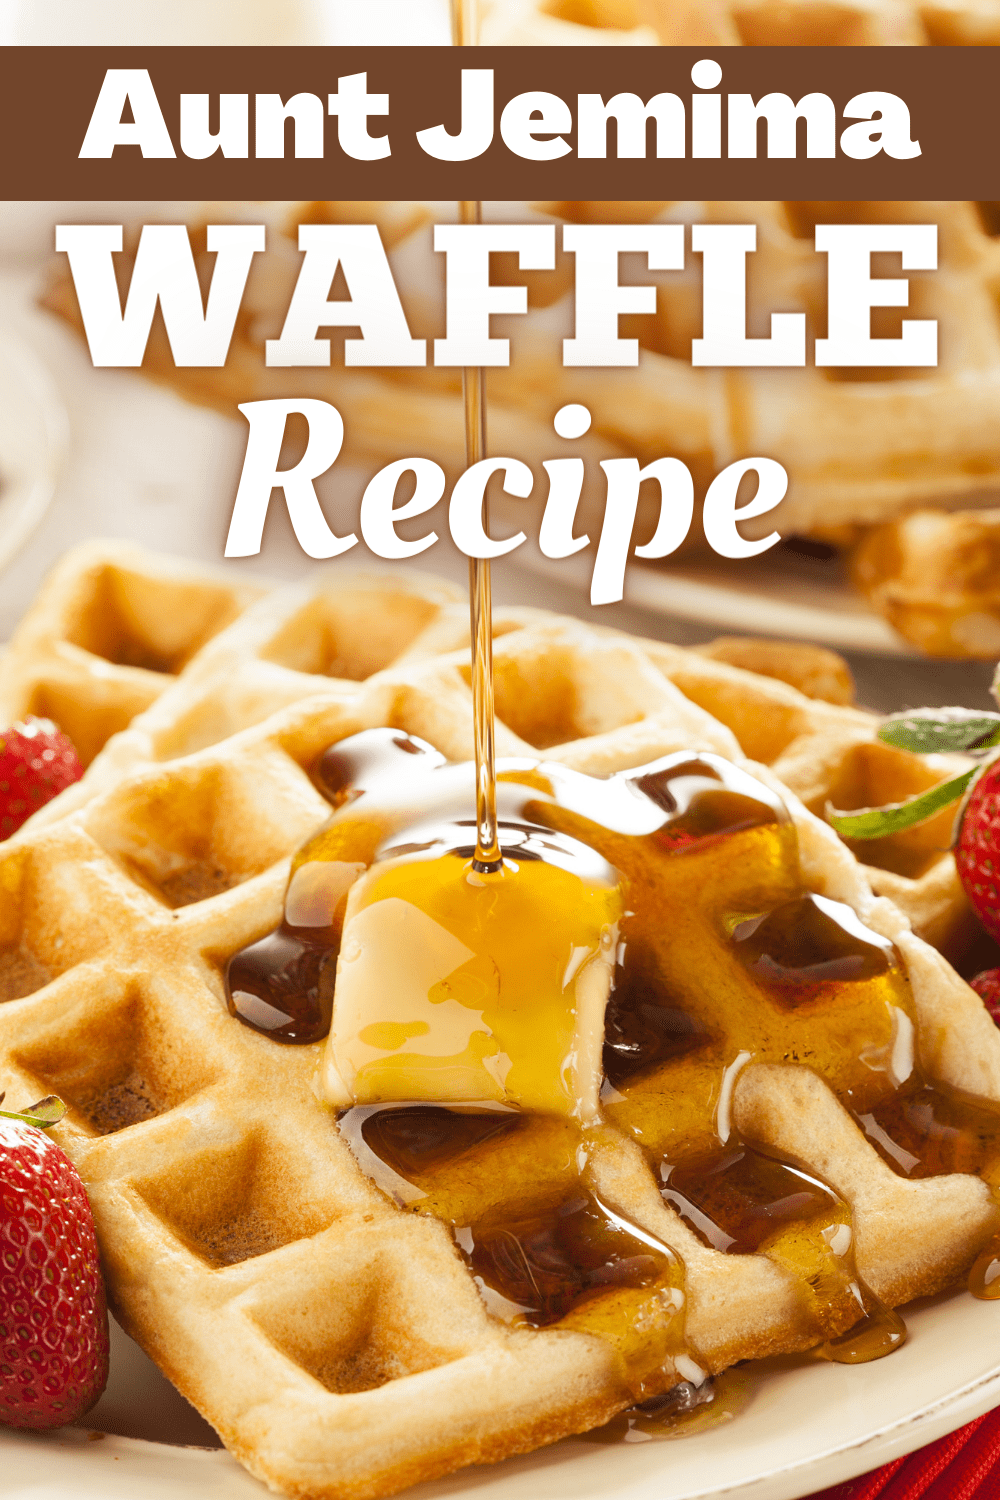 Aunt Jemima Waffle Recipe - Insanely Good